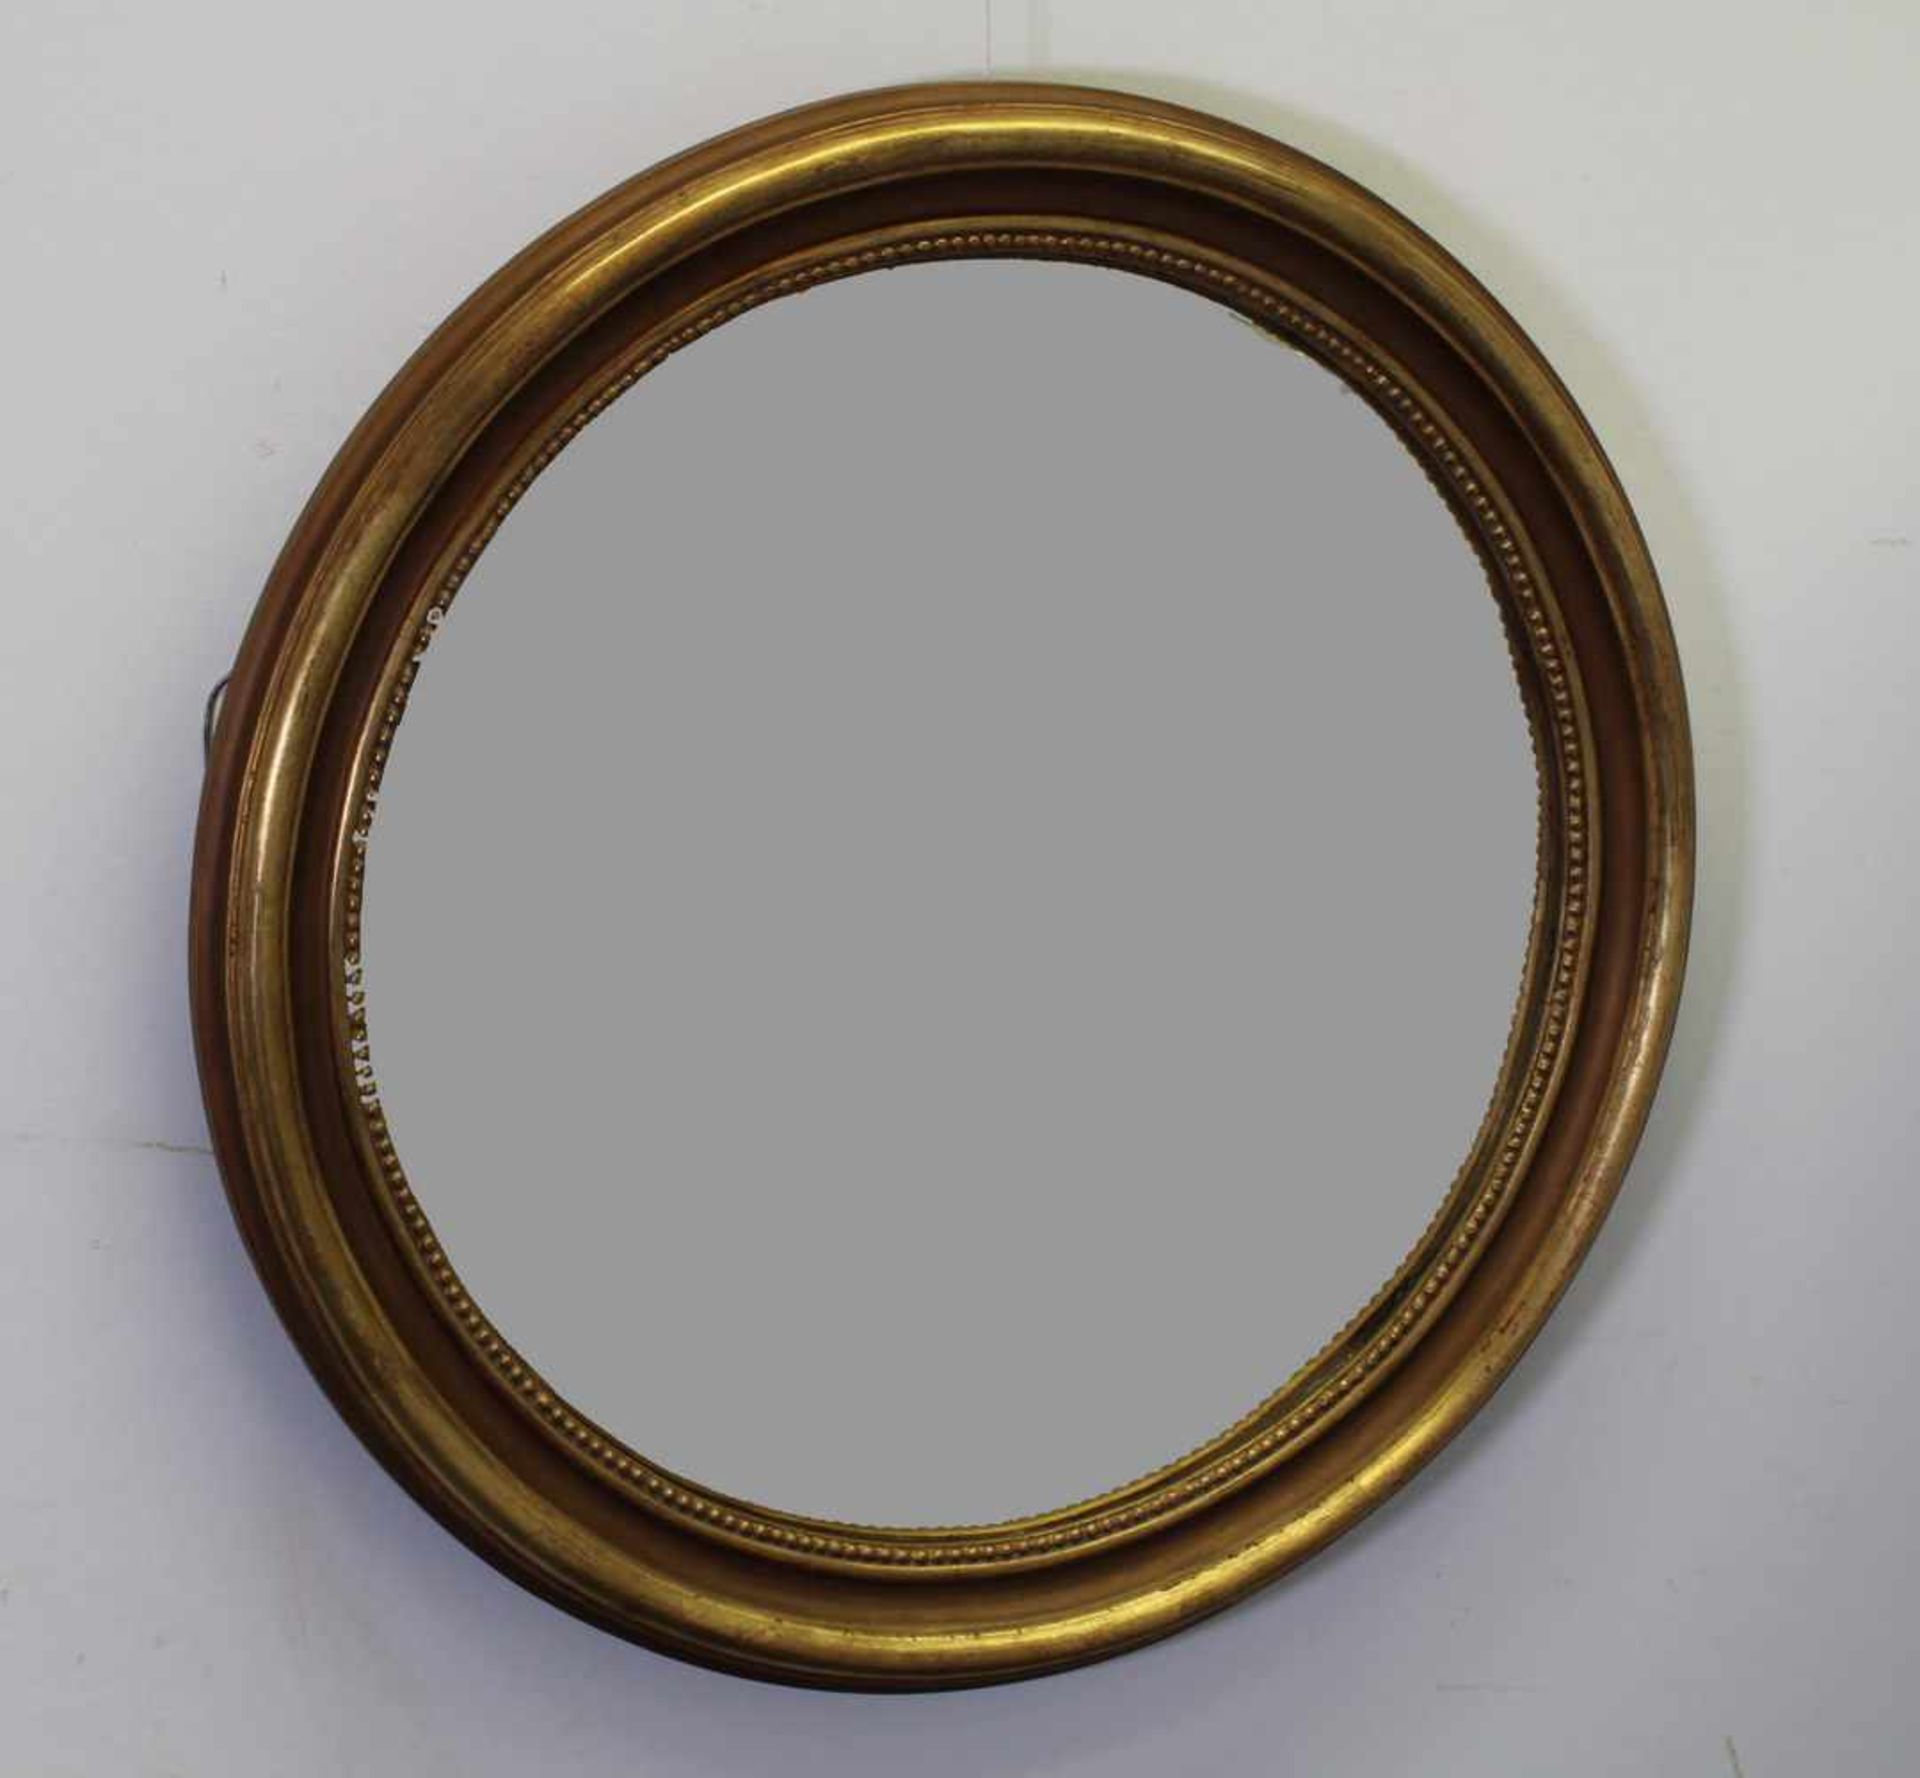 Butlerspiegel, im alten Stil, Holz bronziert, ø 80 cm- - -25.00 % buyer's premium on the hammer - Image 2 of 2